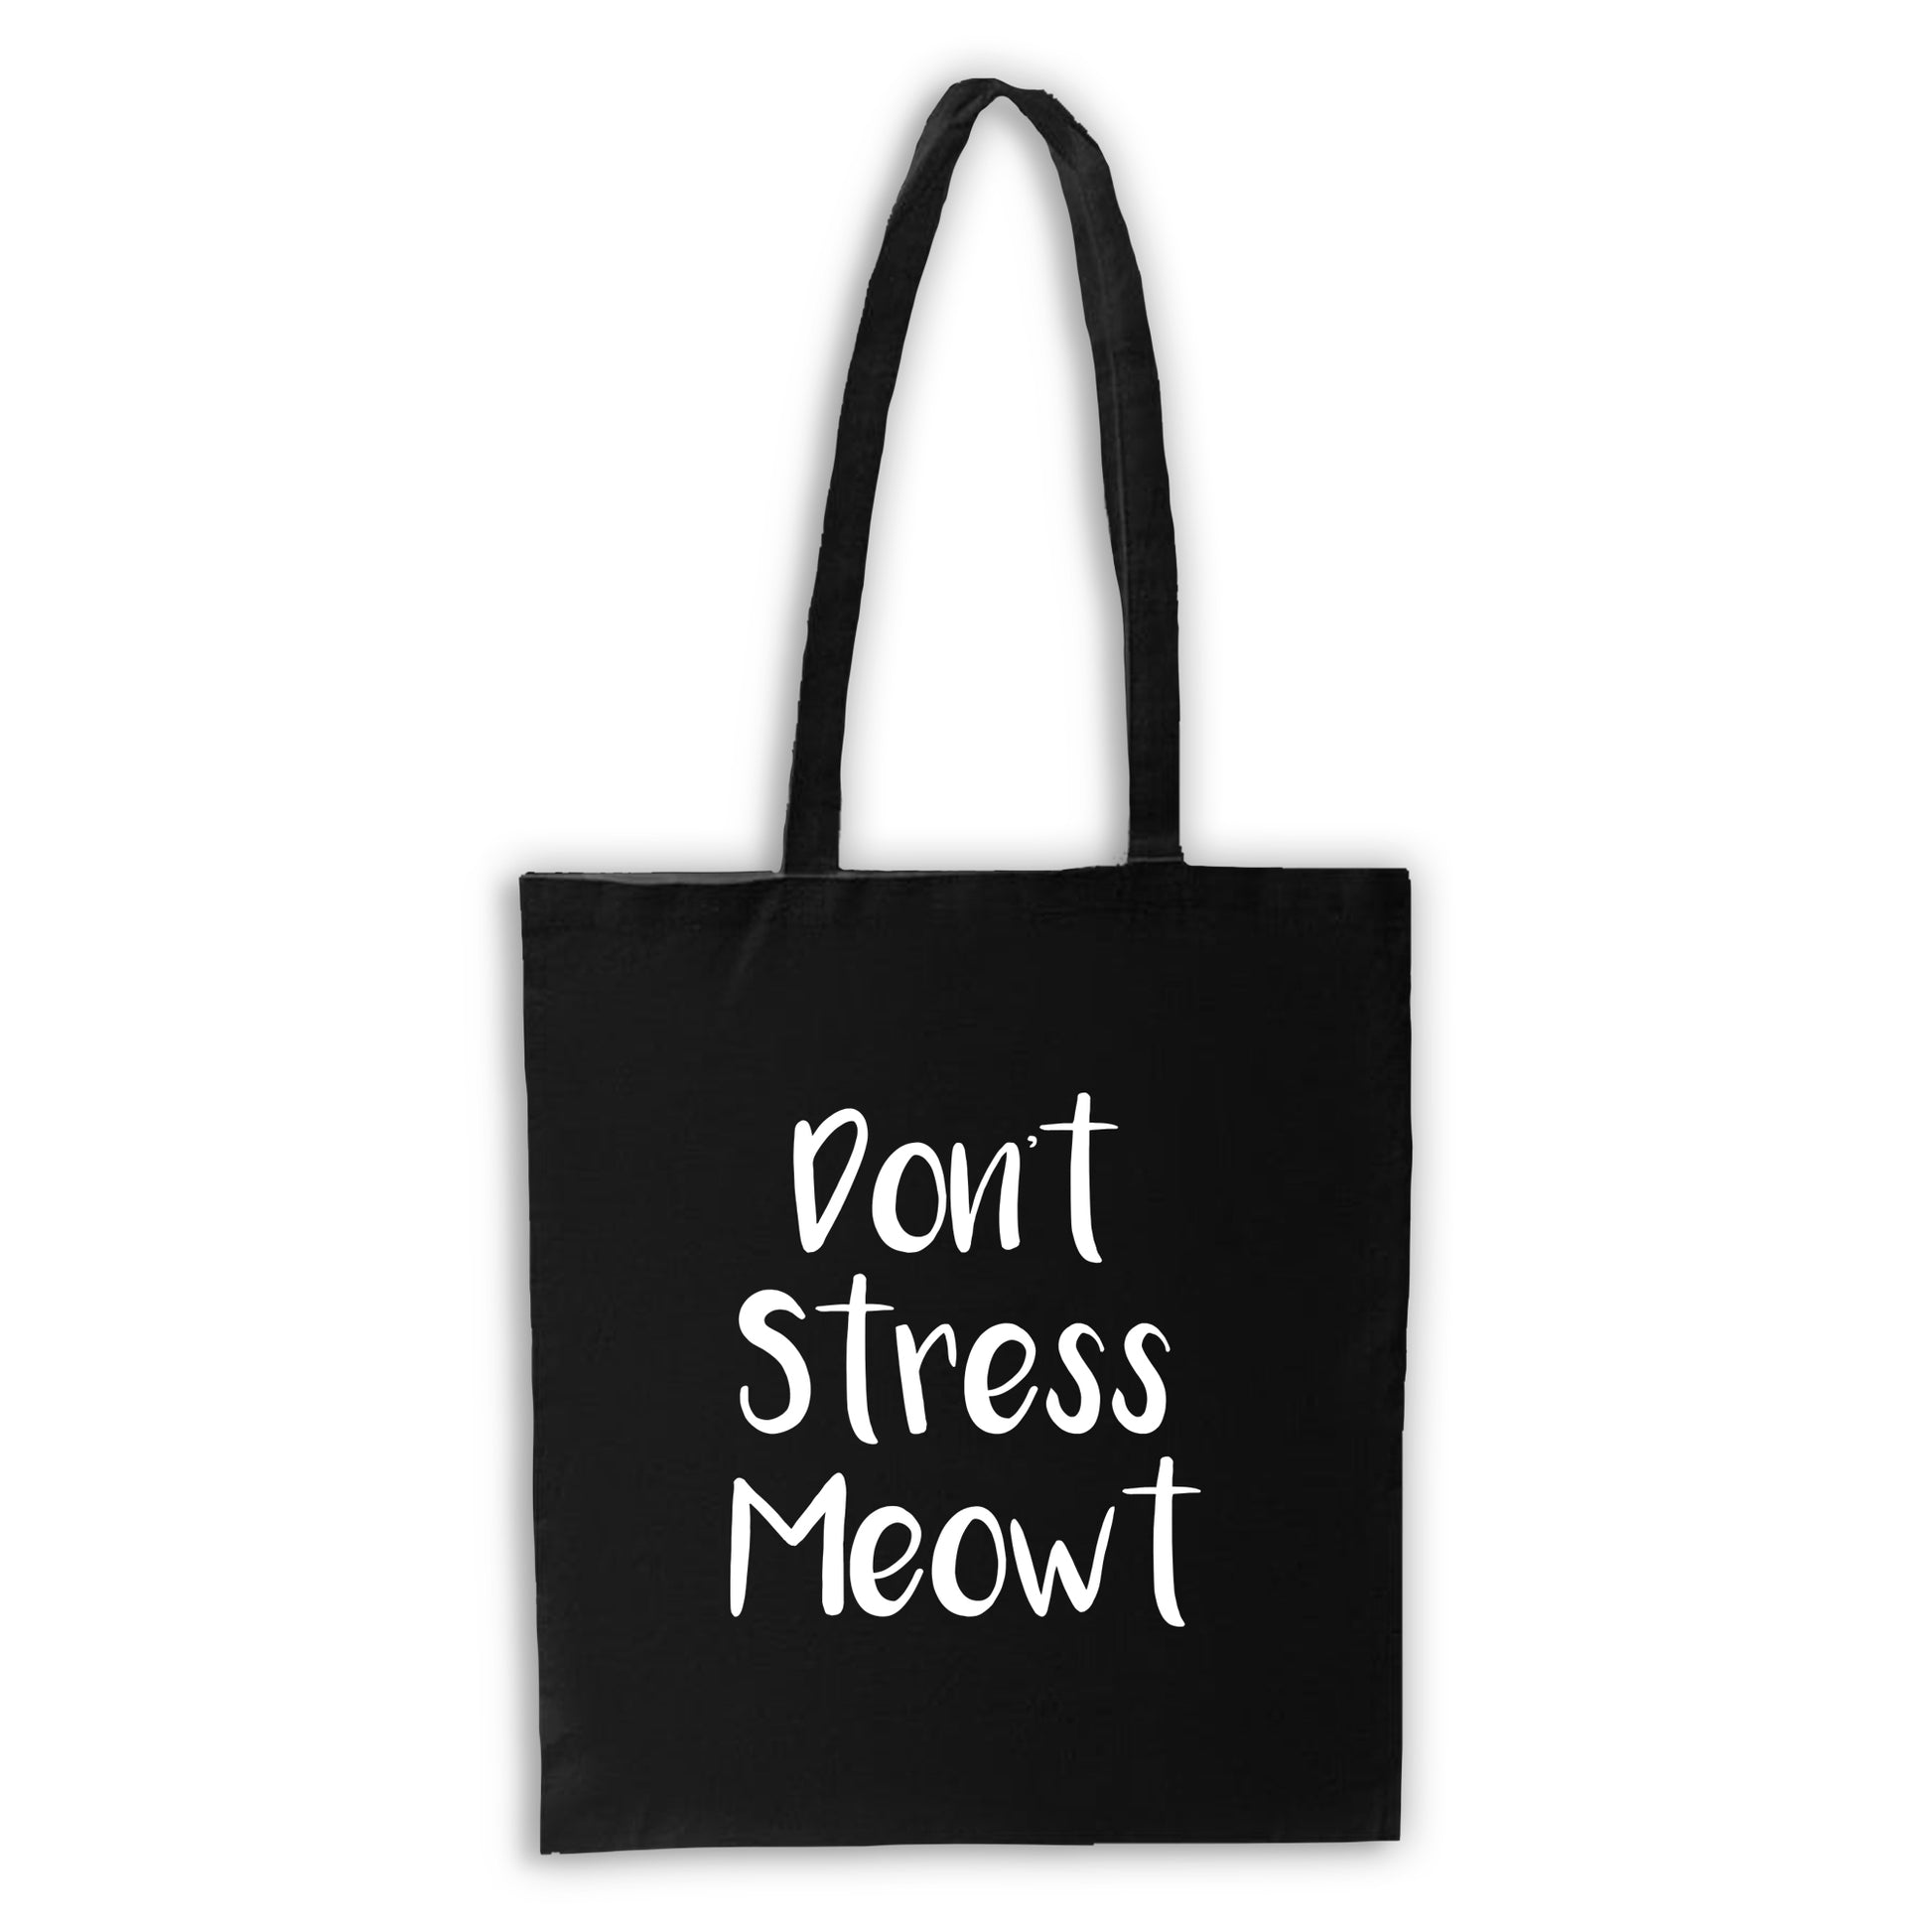 Don't Stress Meowt - Black Tote Bag